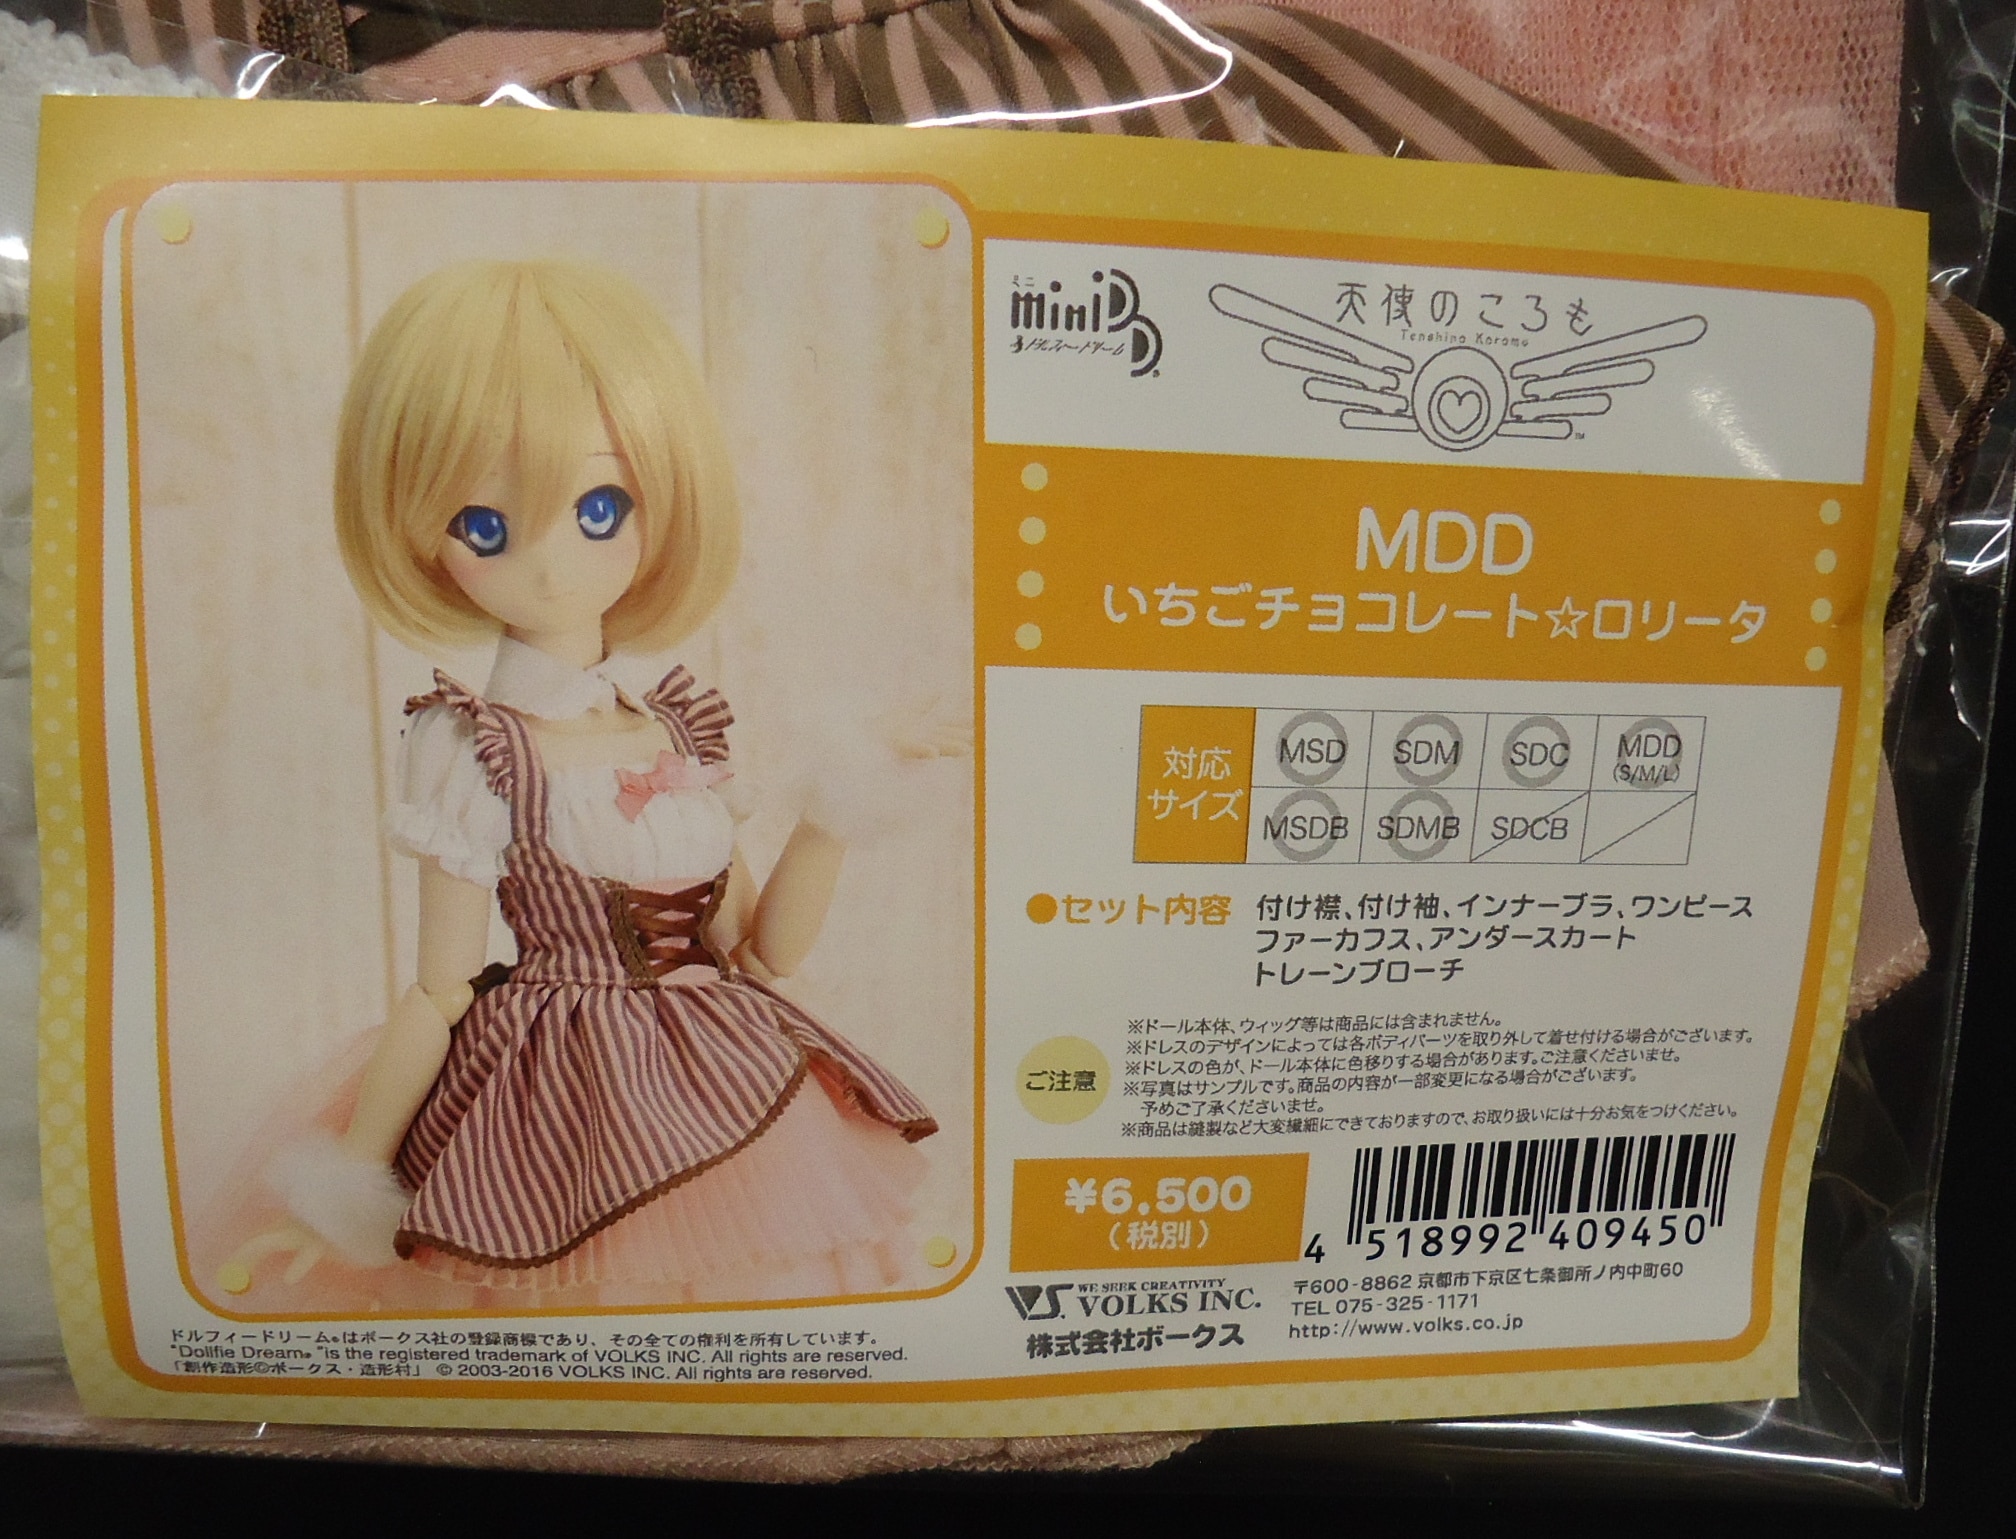 ボークス 天使のころも MDD いちごチョコレート☆ロリータ サイズ:MSD/SDM/SDC | まんだらけ Mandarake